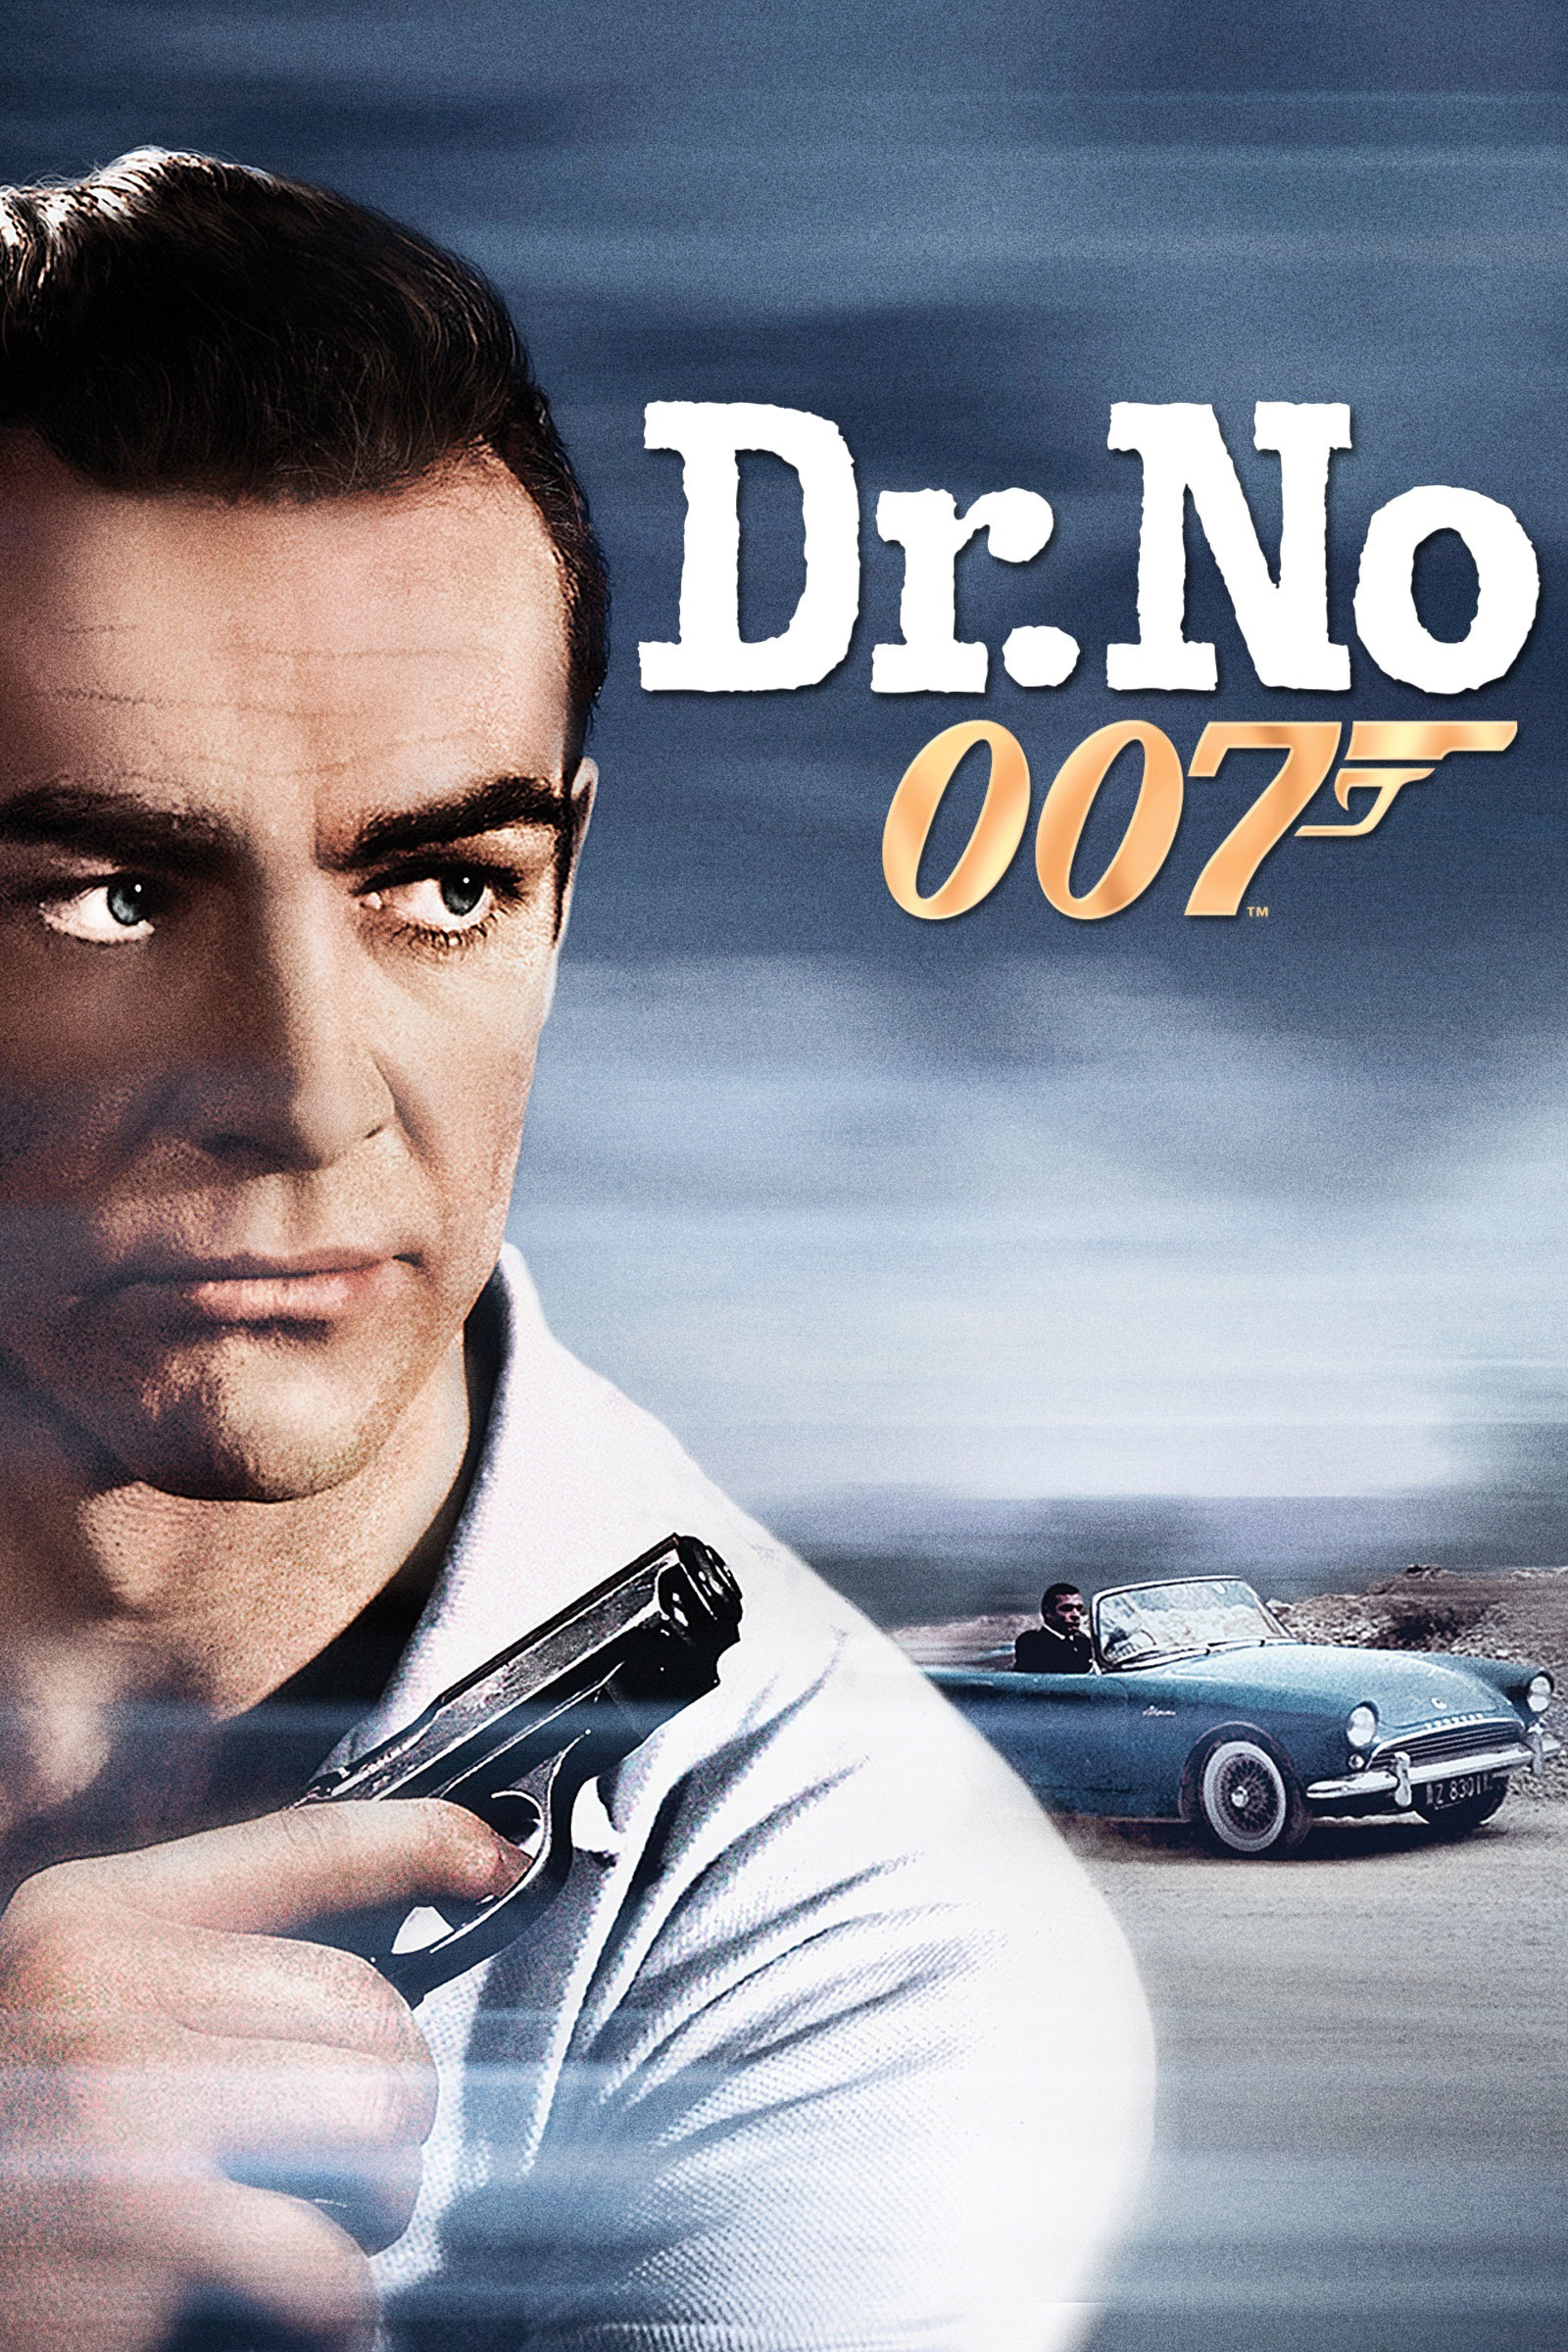 James Bond 007 Films | Hot Sex Picture